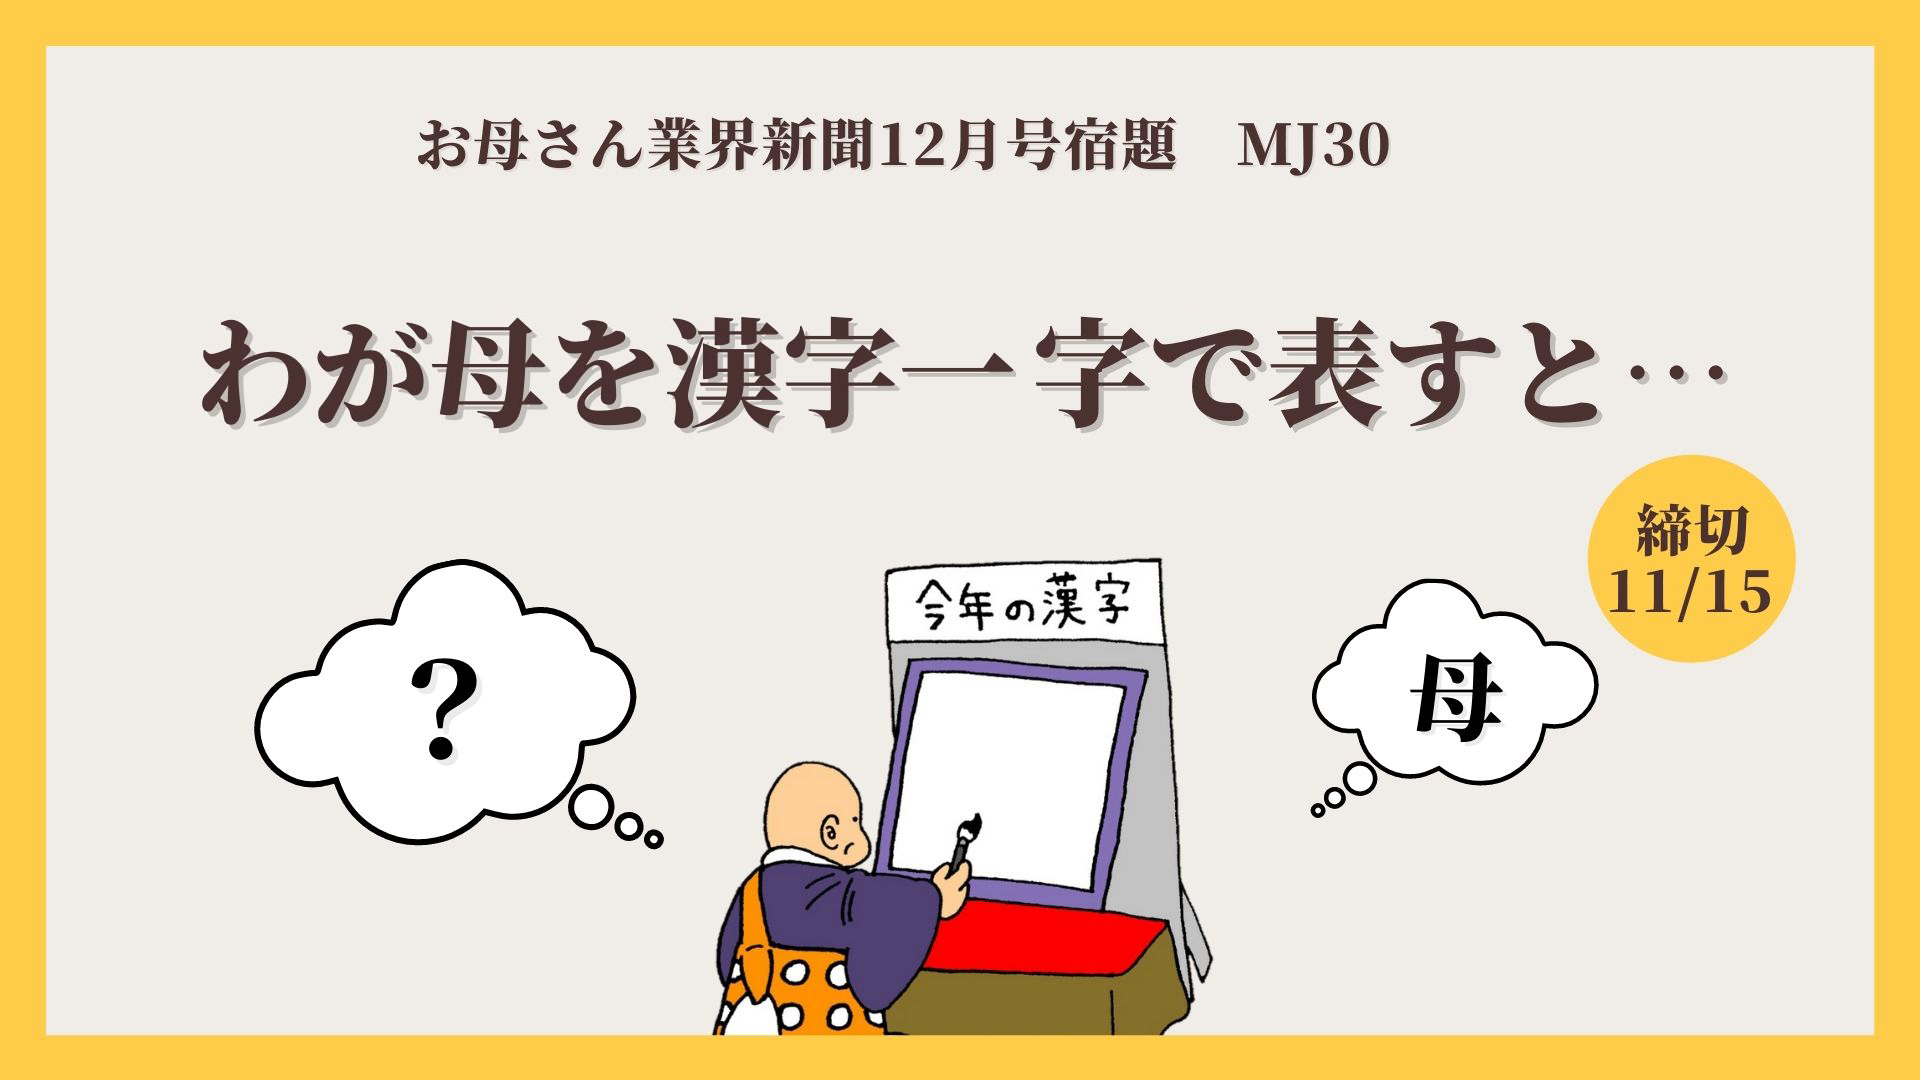 12月号宿題 Mj30 母を漢字一字で表すと お母さん大学